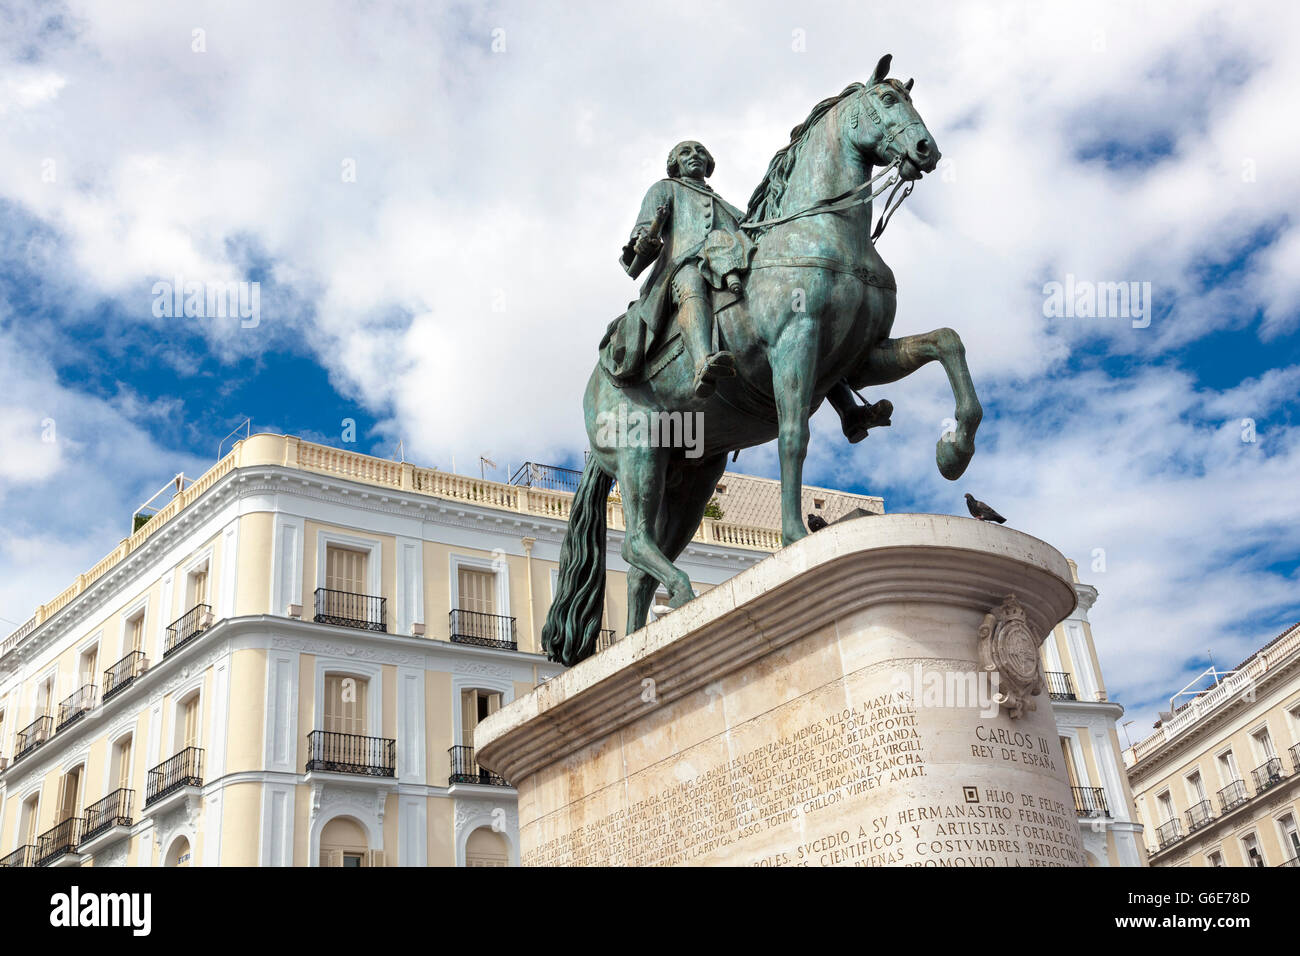 Statua equestre in bronzo di Carlo III di Spagna presso la piazza Puerta del Sol di Madrid in Spagna Foto Stock